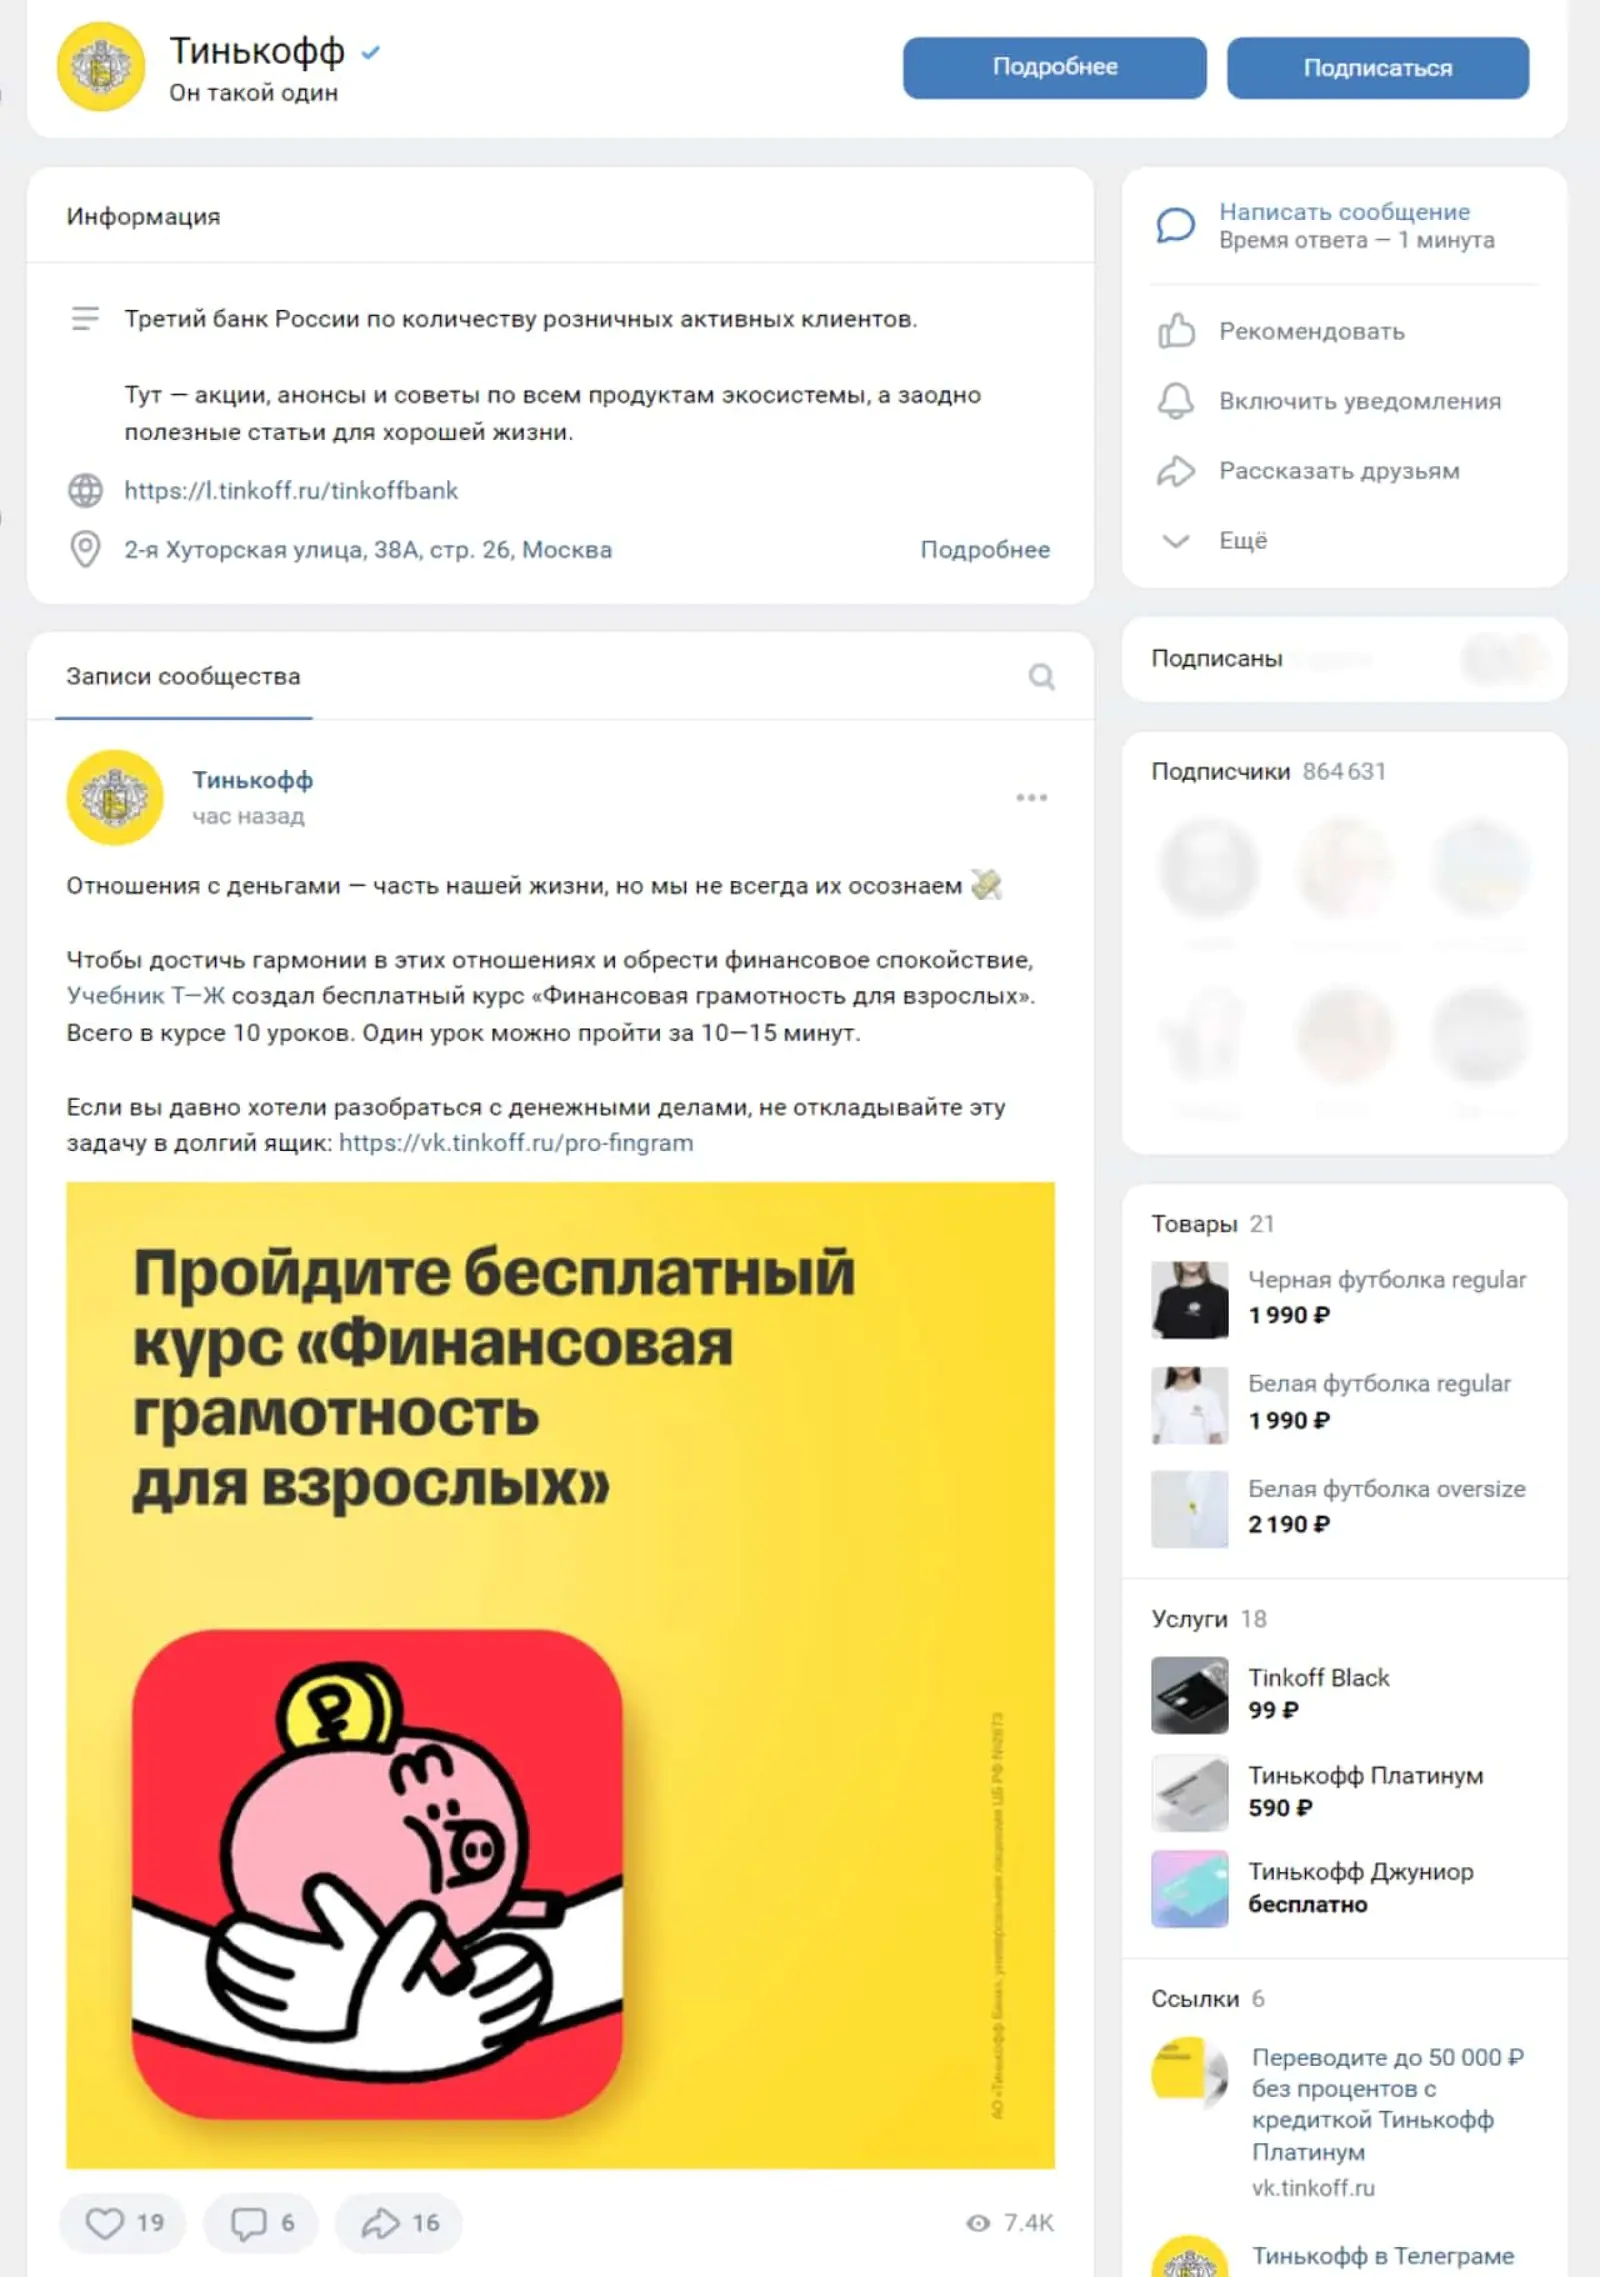 «Тинькофф» публикует на странице во «ВКонтакте» лайфхаки по пользованию своими продуктами и полезные статьи